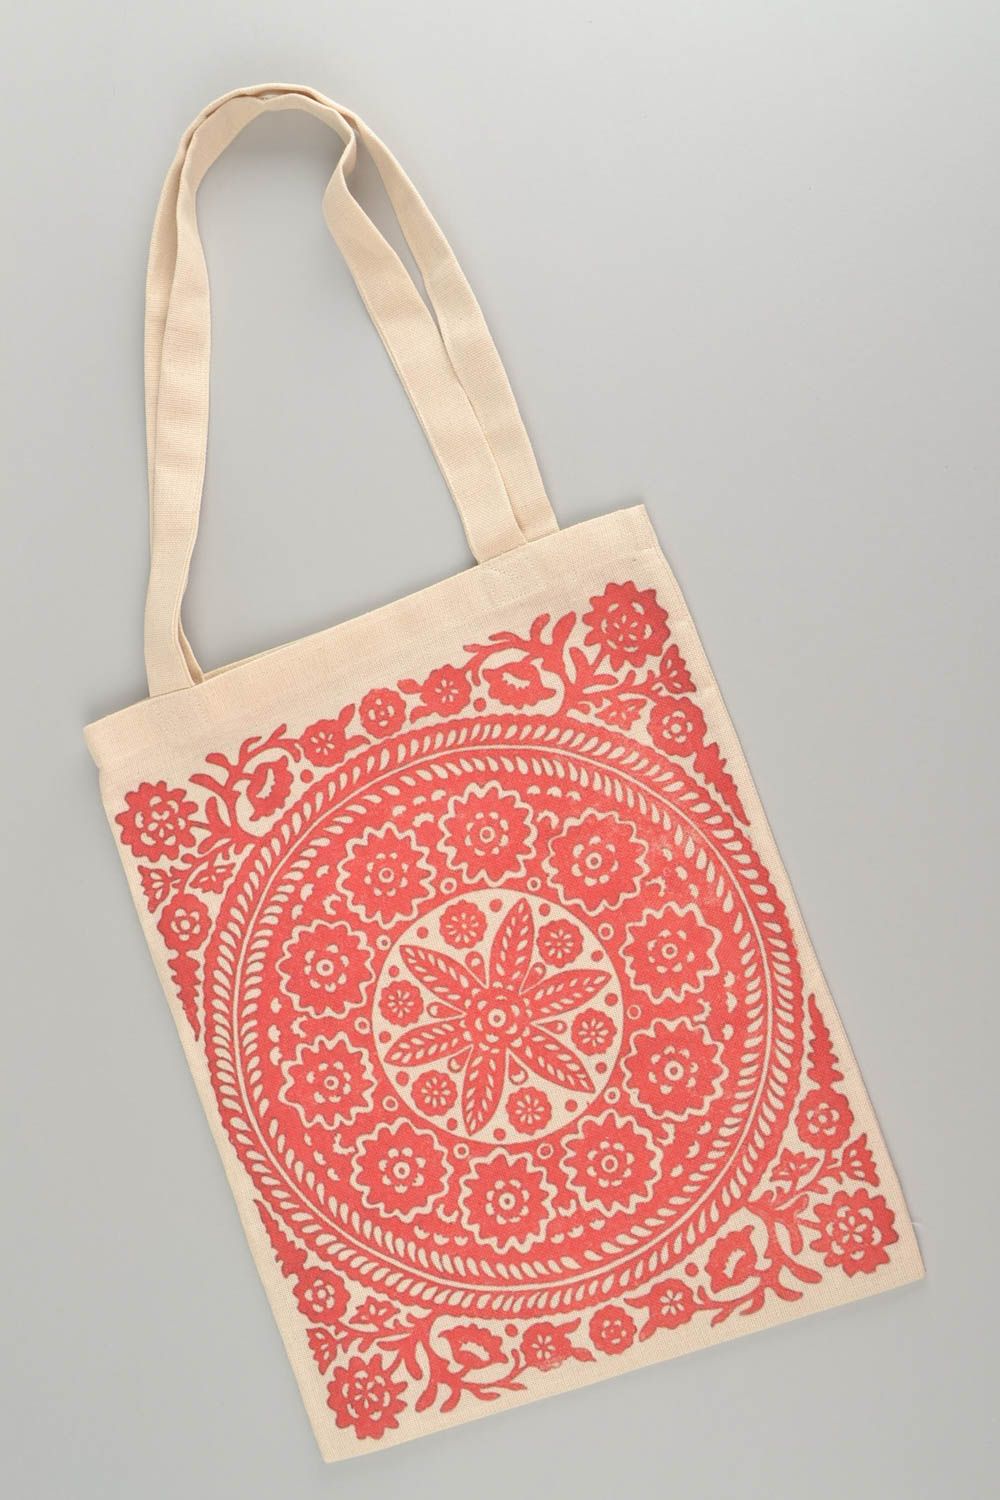 Текстильная сумка с орнаментом эко аксессуар ручной работы принтованная красная фото 3